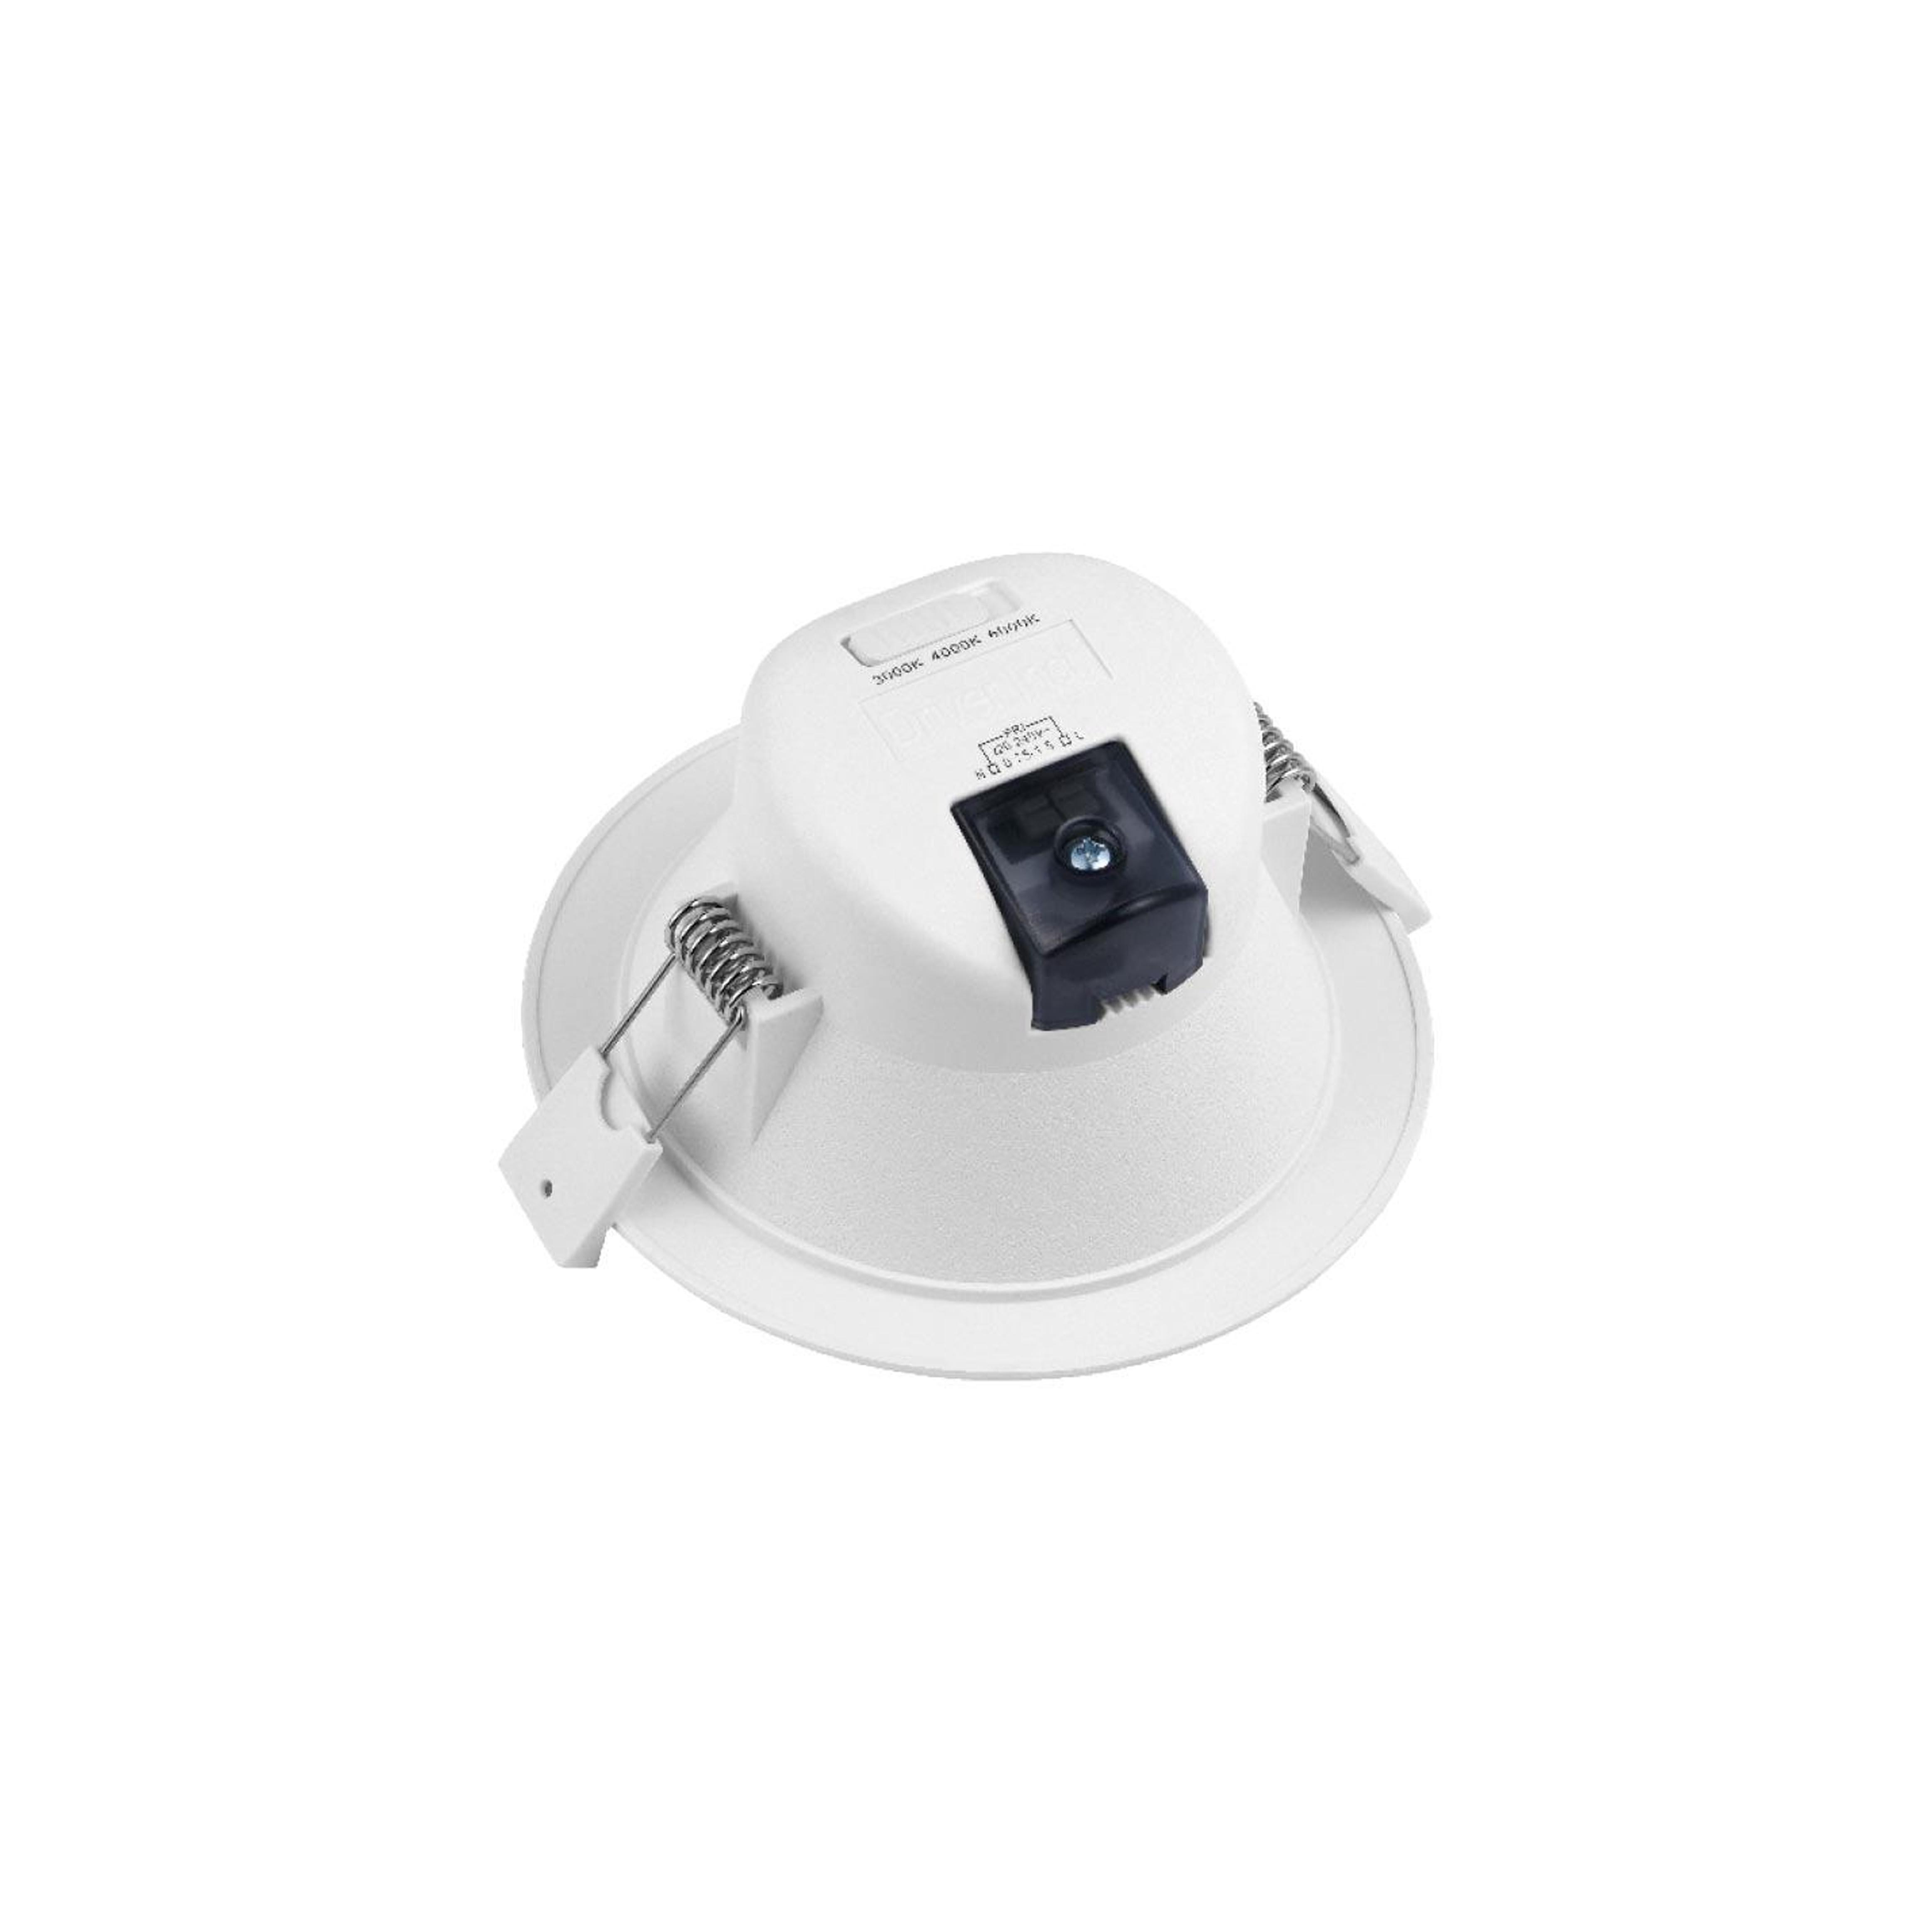 CCT LED Einbaustrahler rund weiß 90° dimmbar - Ausführung: 25W Ø244mm 